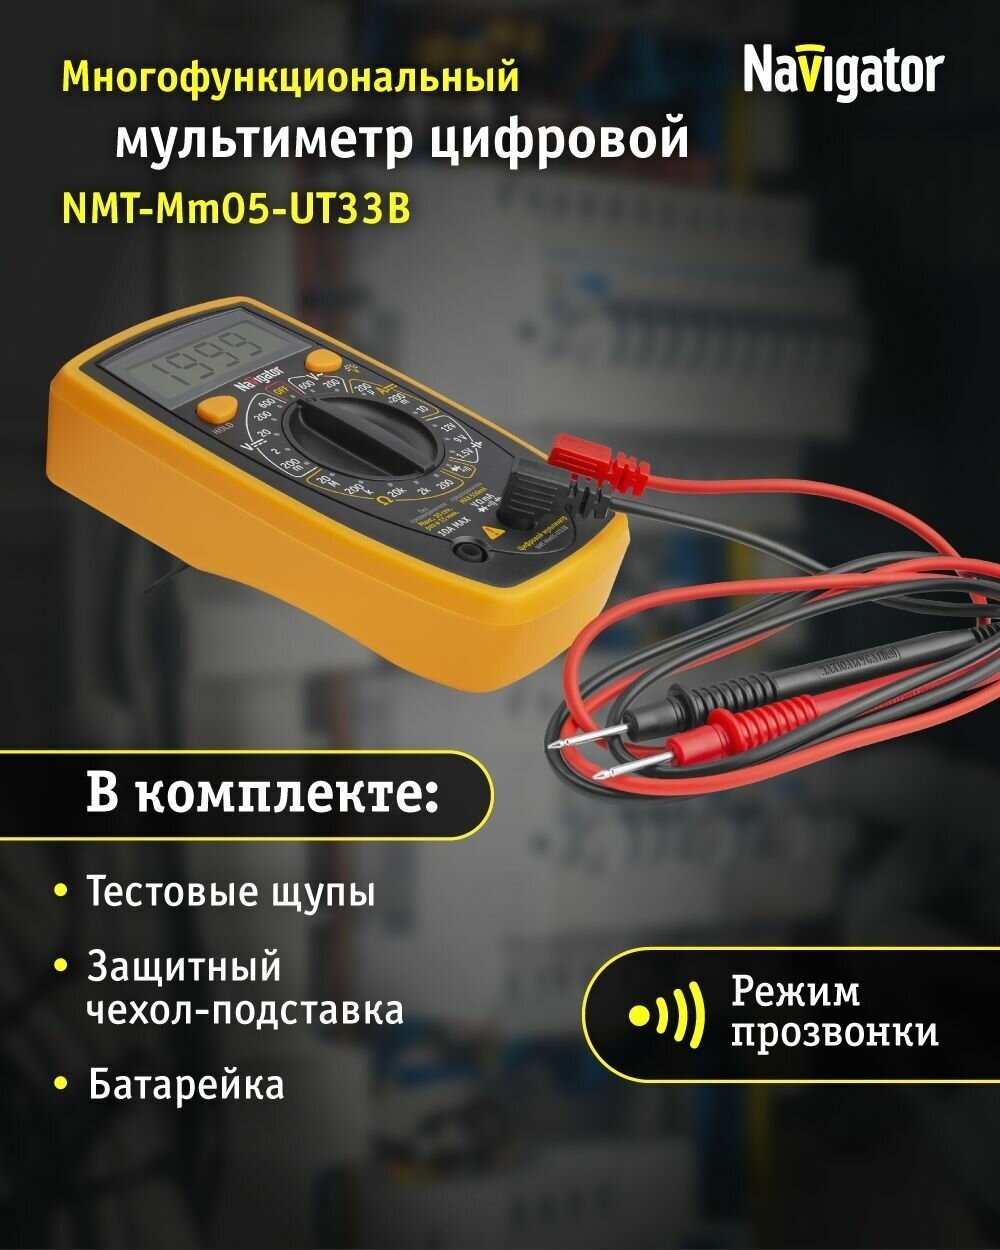 Профессиональный цифровой мультиметр Navigator 93 579 NMT-Mm05